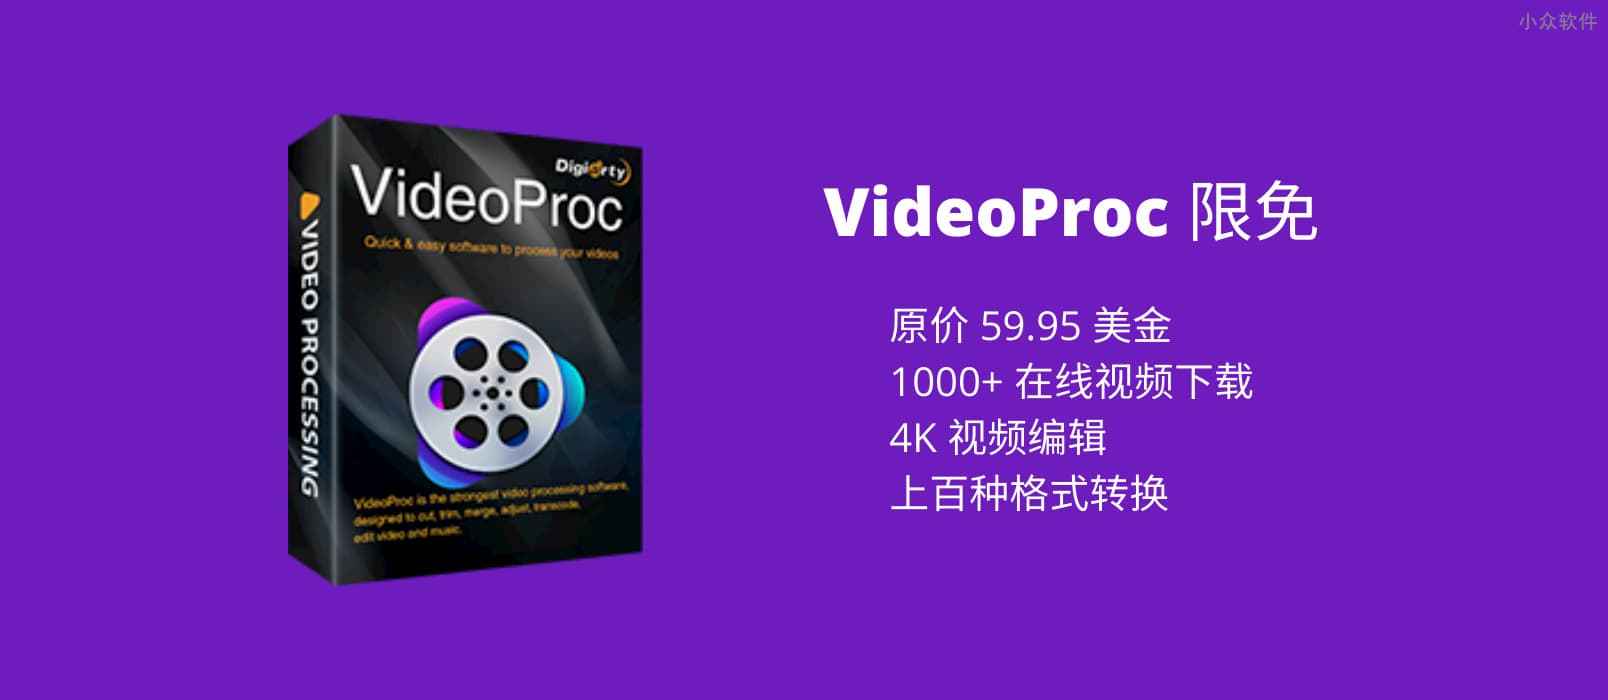 价值 59.95 美元，集在线视频下载、视频编辑与格式转换于一体的工具 VideoProc 限免